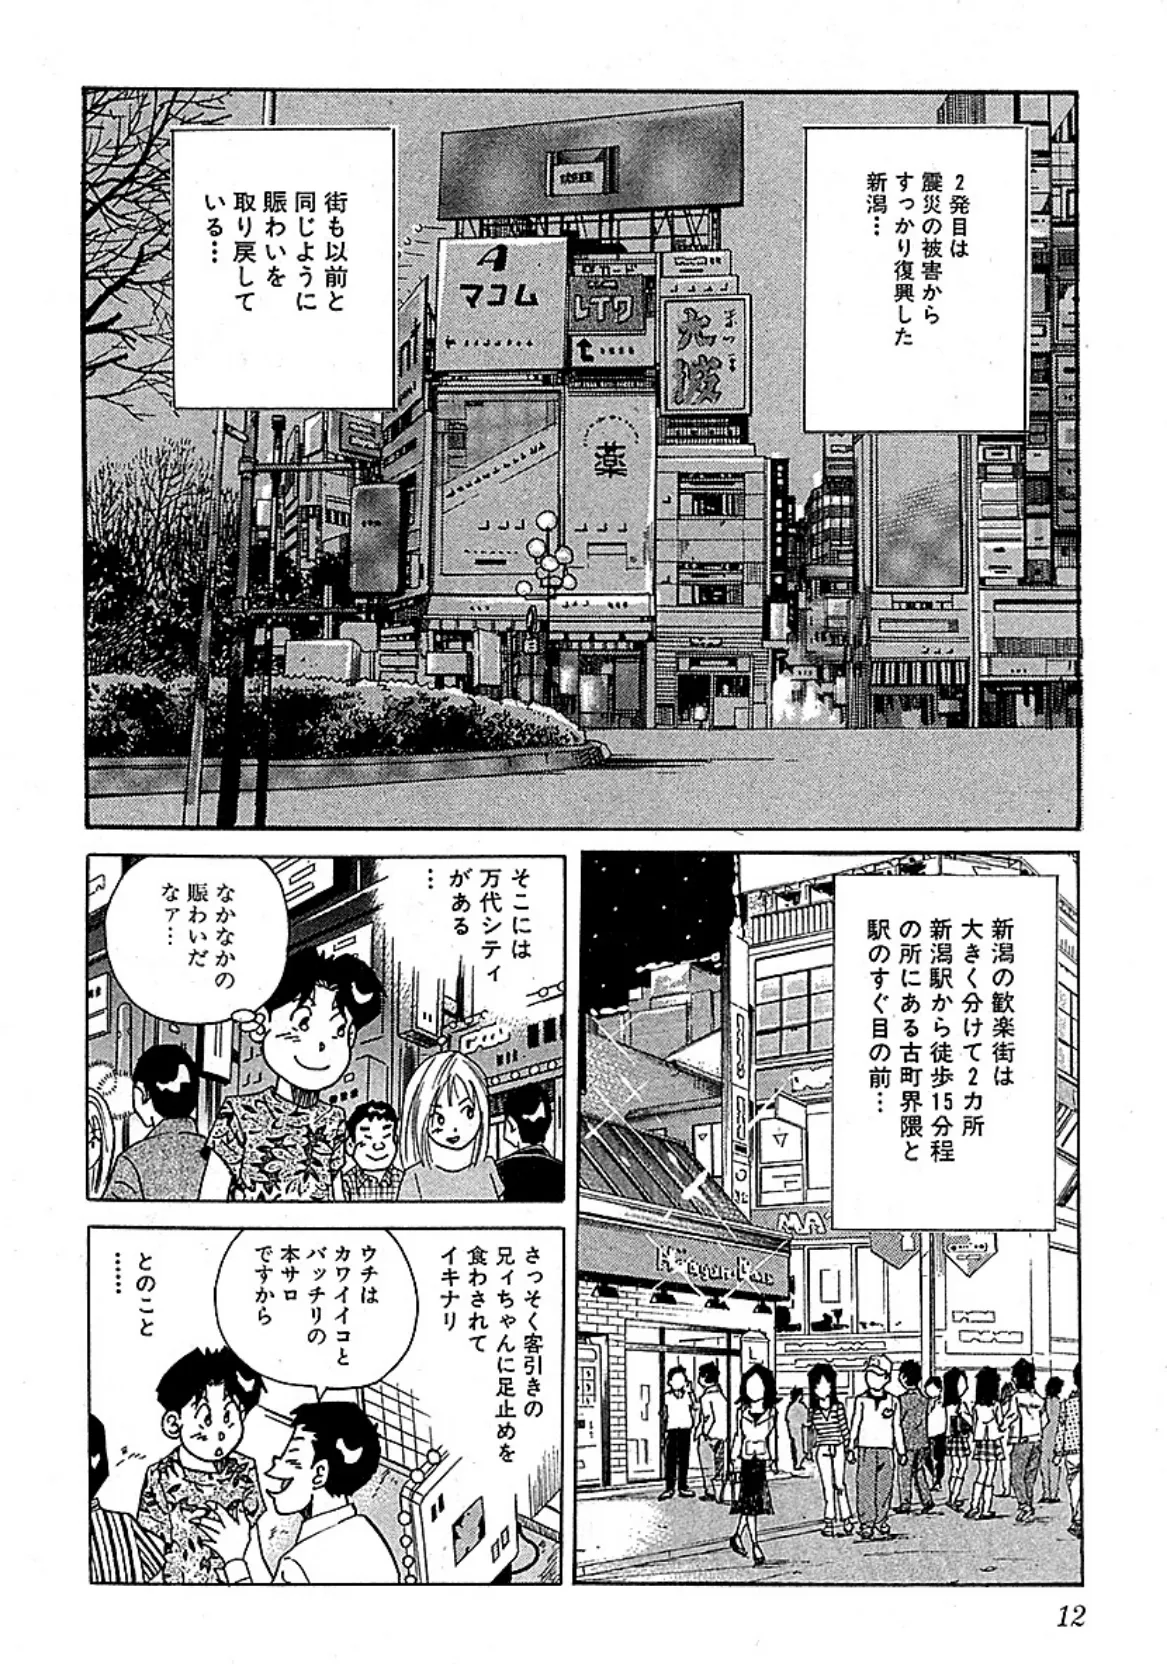 山崎大紀の本当にあったHな話 三行広告スペシャル 完全版 8ページ